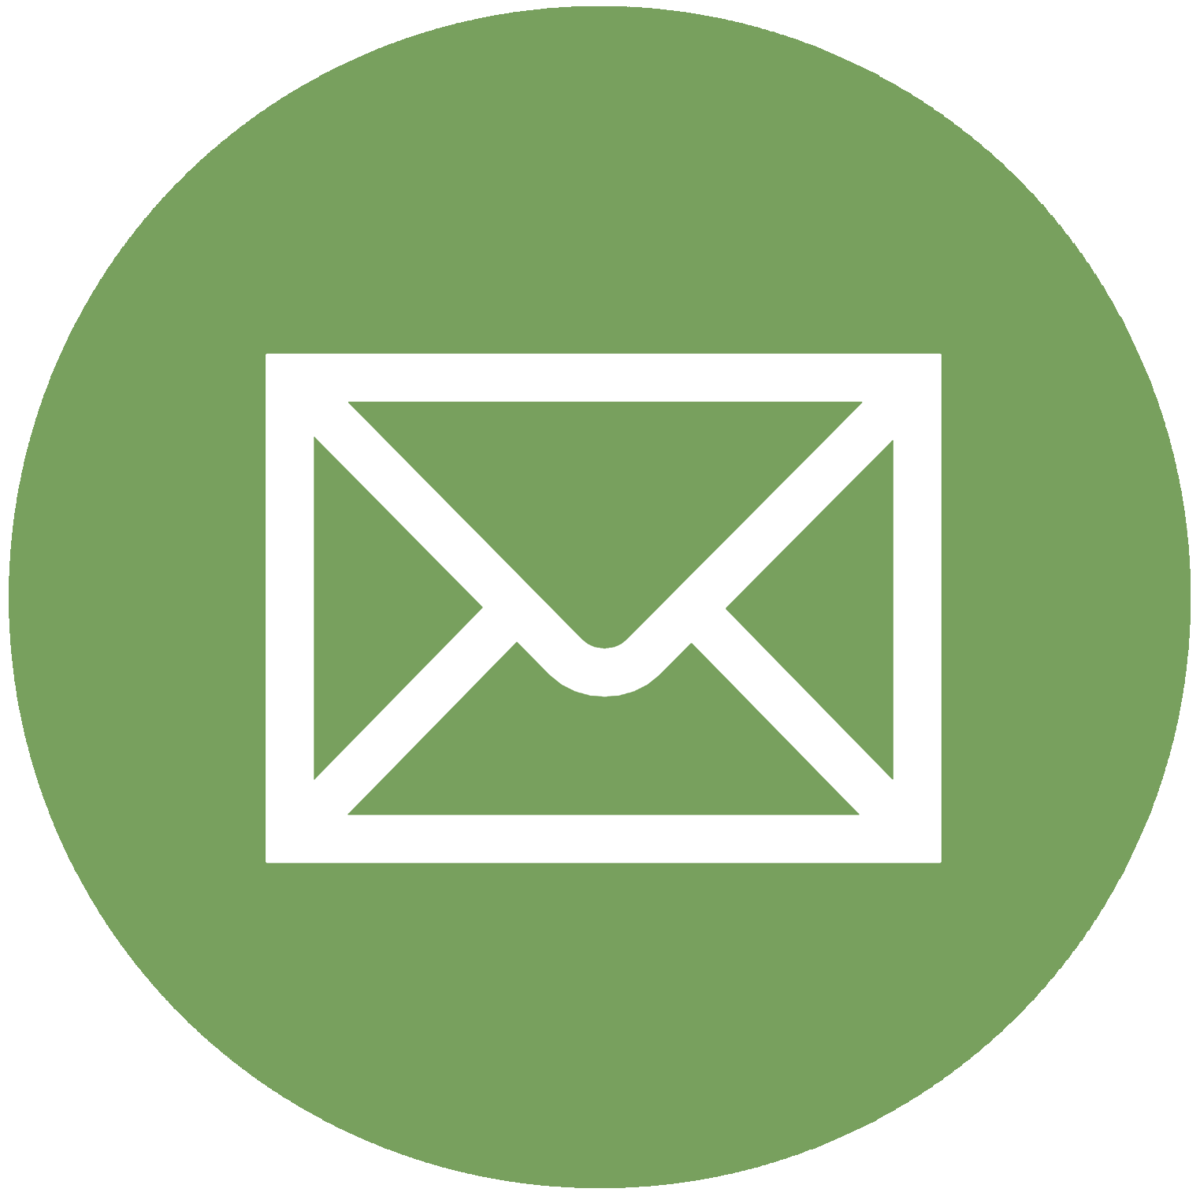 Envlope Logo - Download Icon Symbol Envelope Computer Mail Logo Email HQ PNG Image